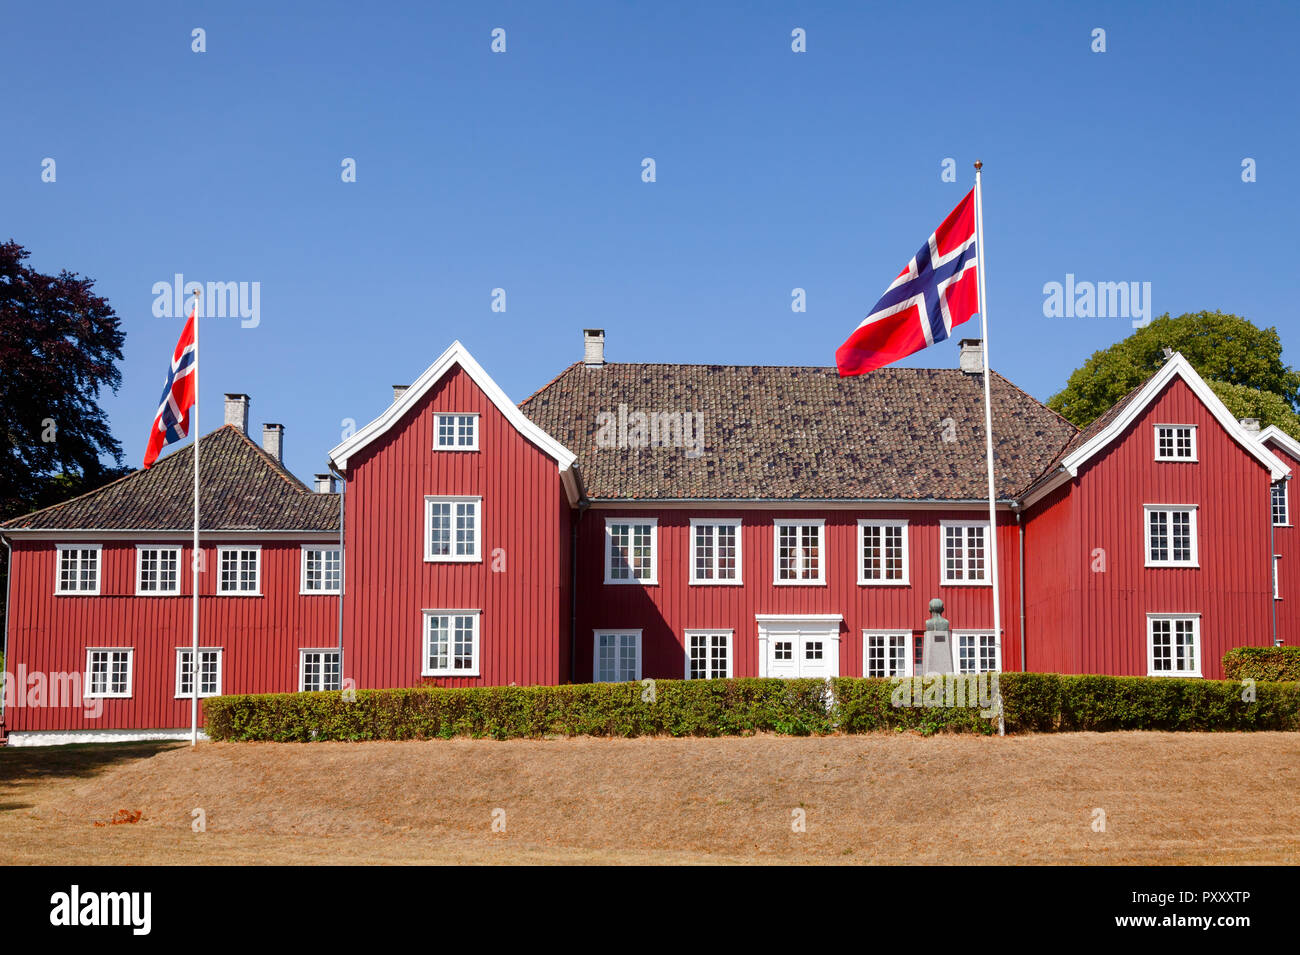 Legno di color rosso Herregarden Manor House, uno di Norvegia più raffinati in stile barocco secolari strutture in Larvik, nella contea di Vestfold, Norvegia Foto Stock